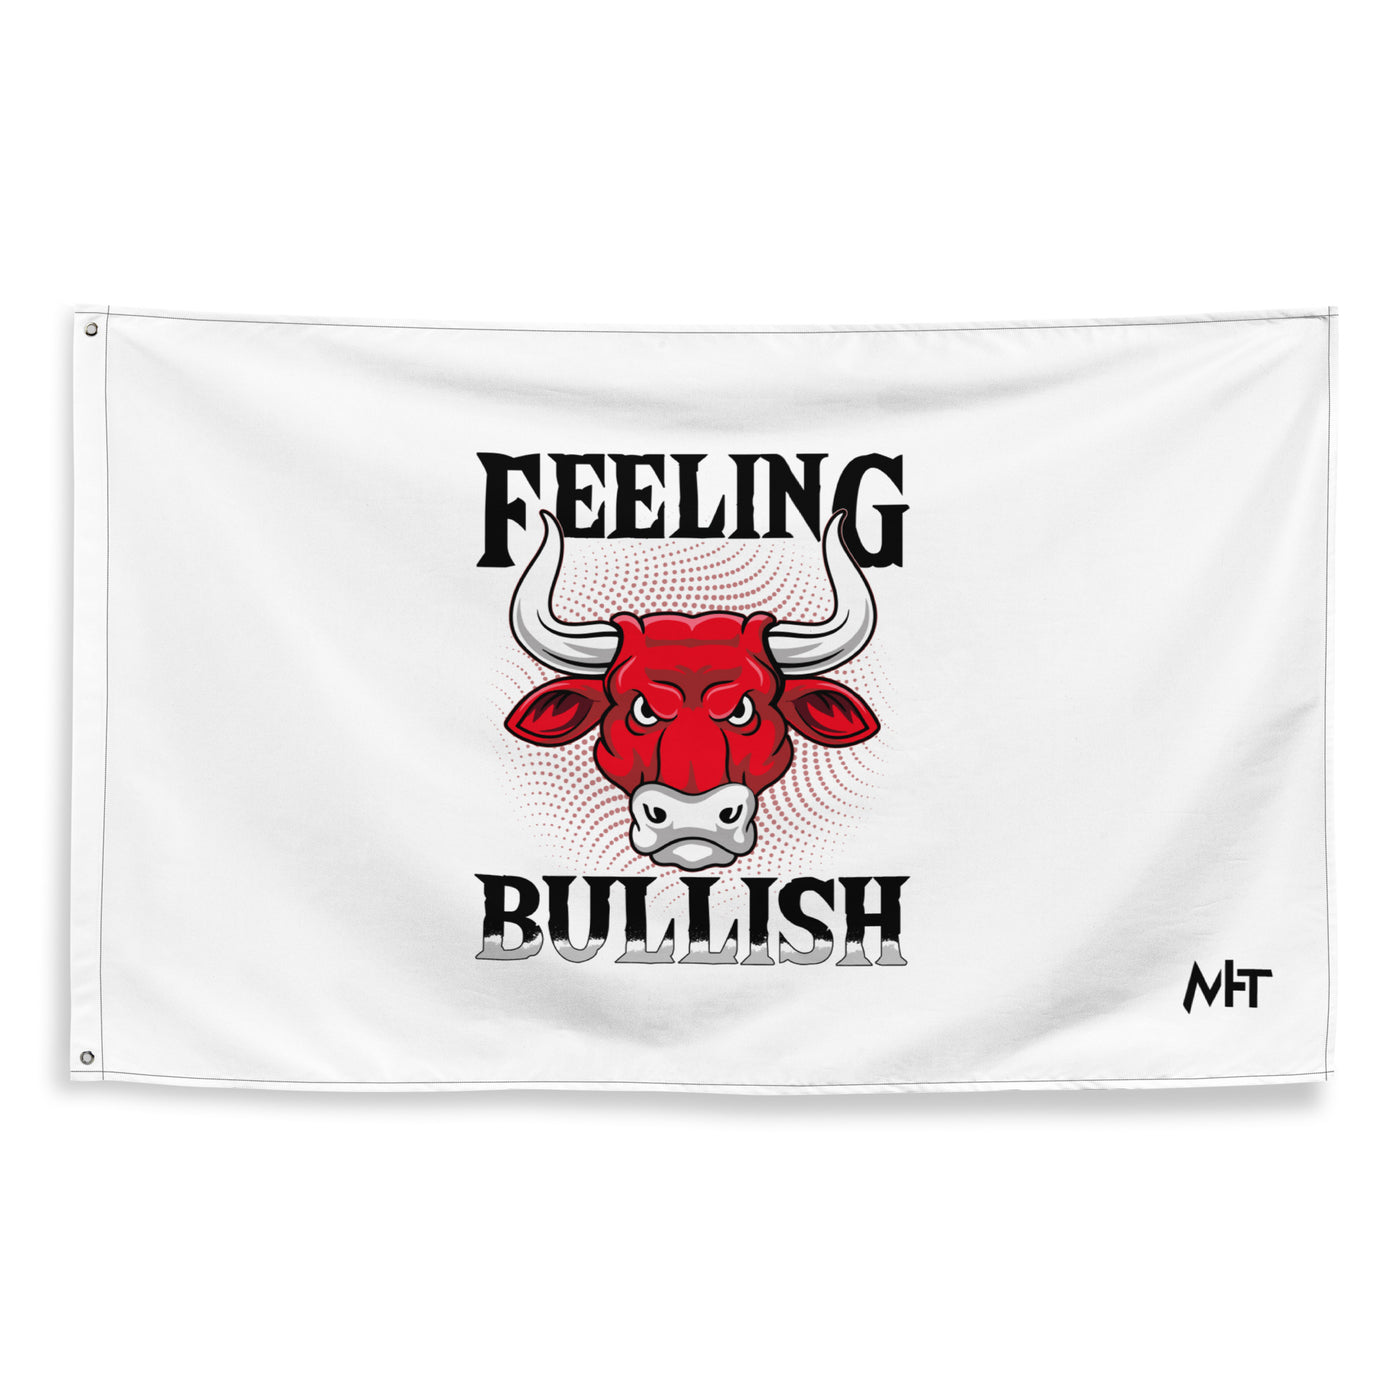 Feeling Bullish in Dark Text - Flag